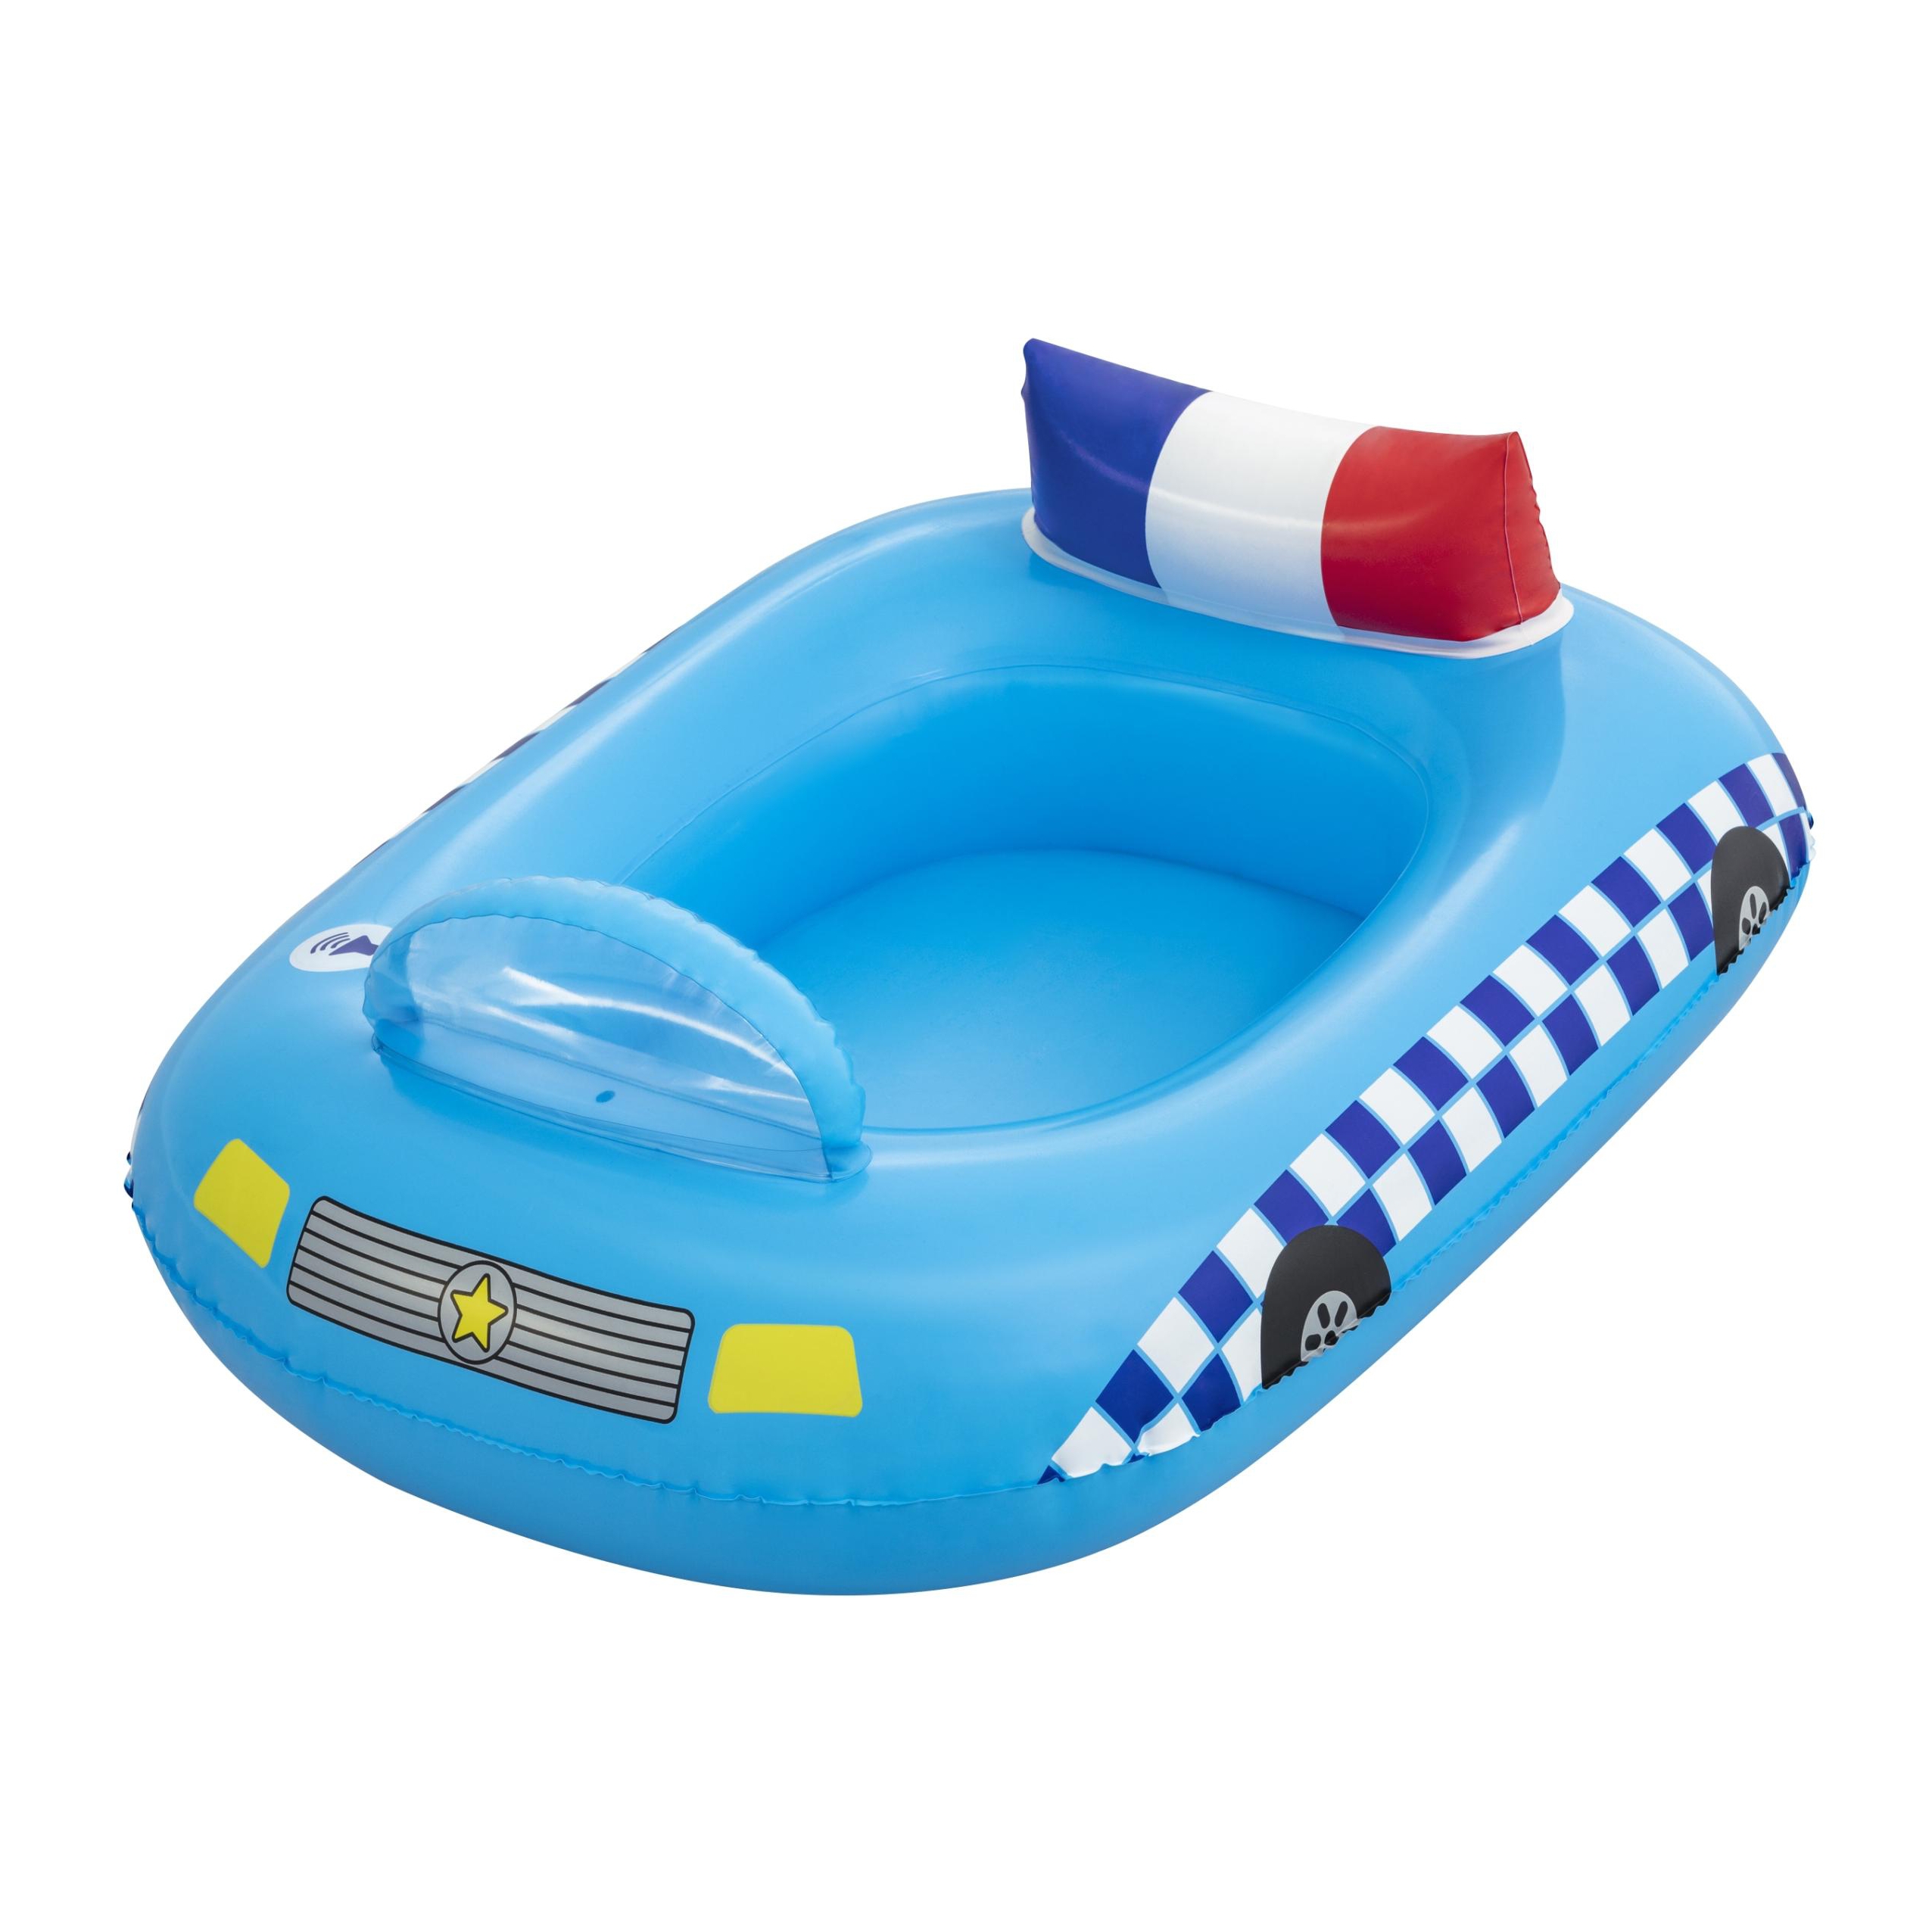 Barca gonflabila pentru copii Bestway Police 34153, PVC, albastru, 88 x 66 x 32 cm